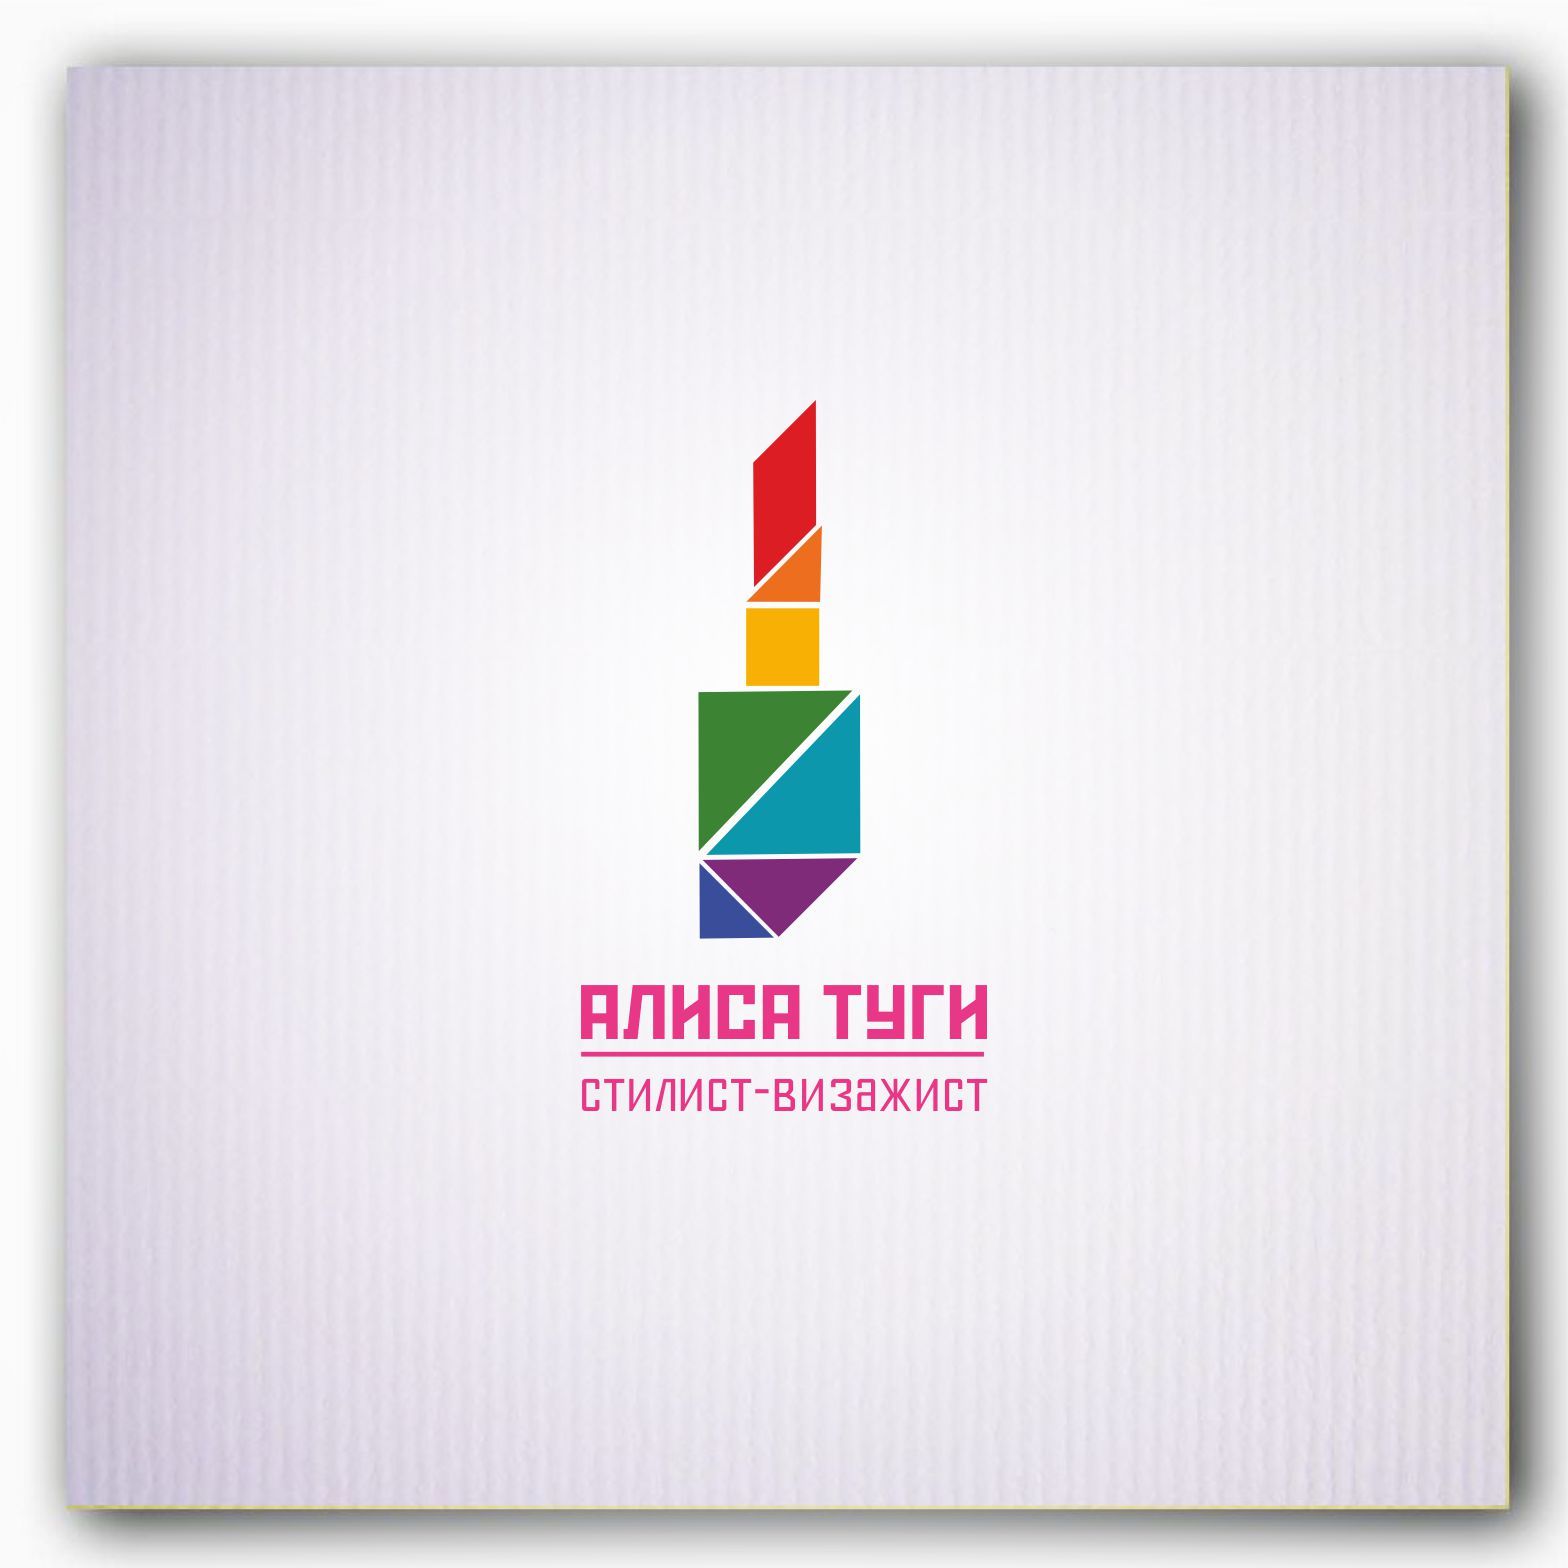 Логотип для визажиста - дизайнер Yana-Lev